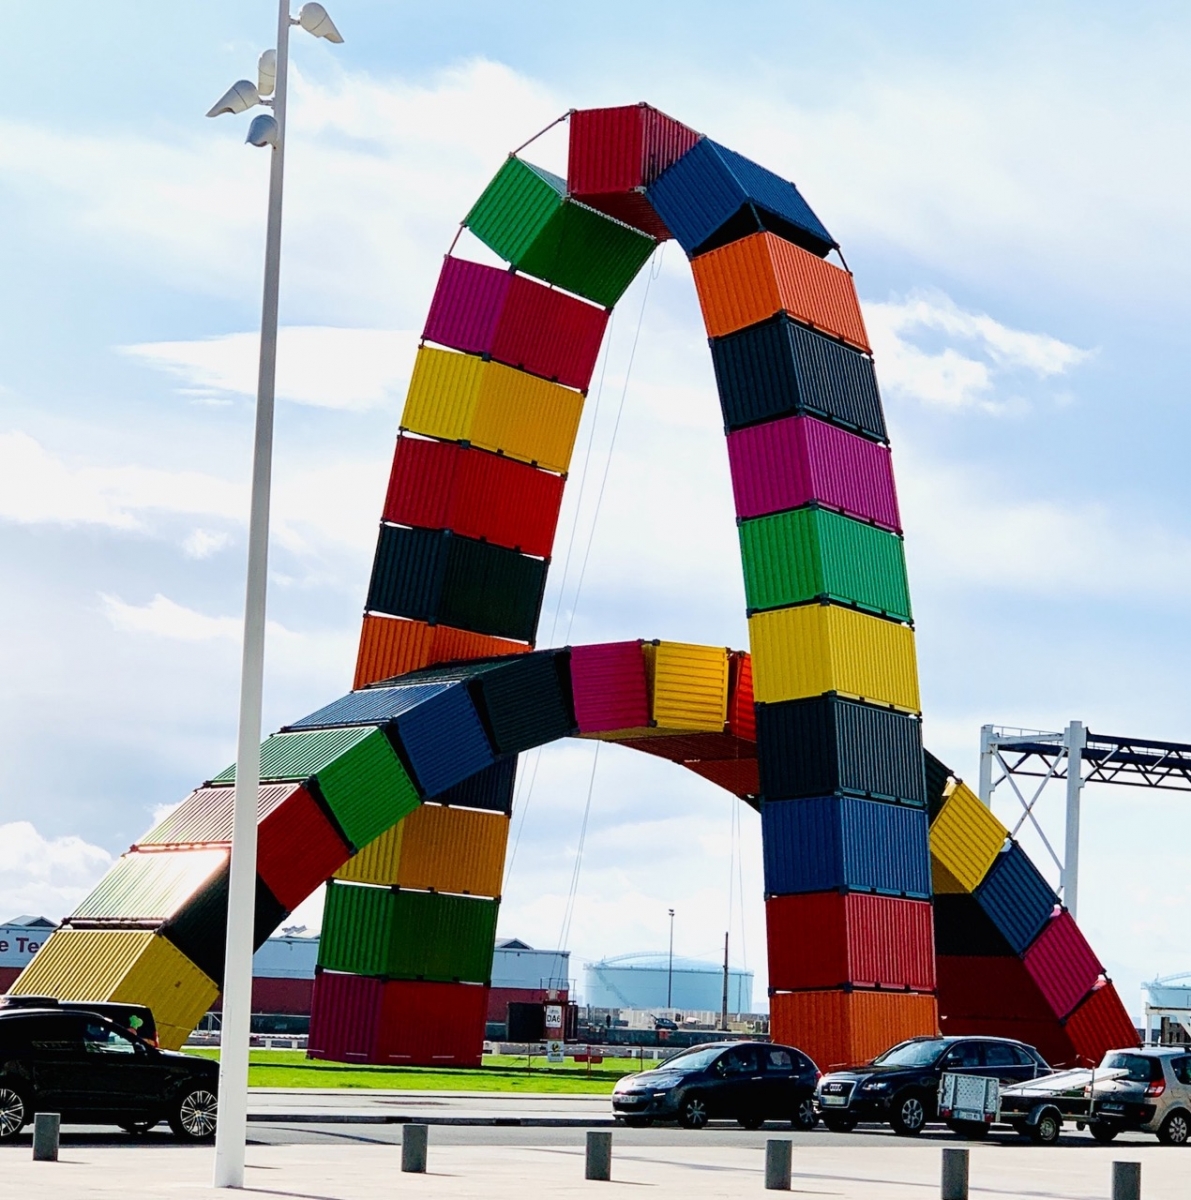 La 'Catene of Containers' es una instalación artística de arcos de contenedores en Le Havre, Francia.